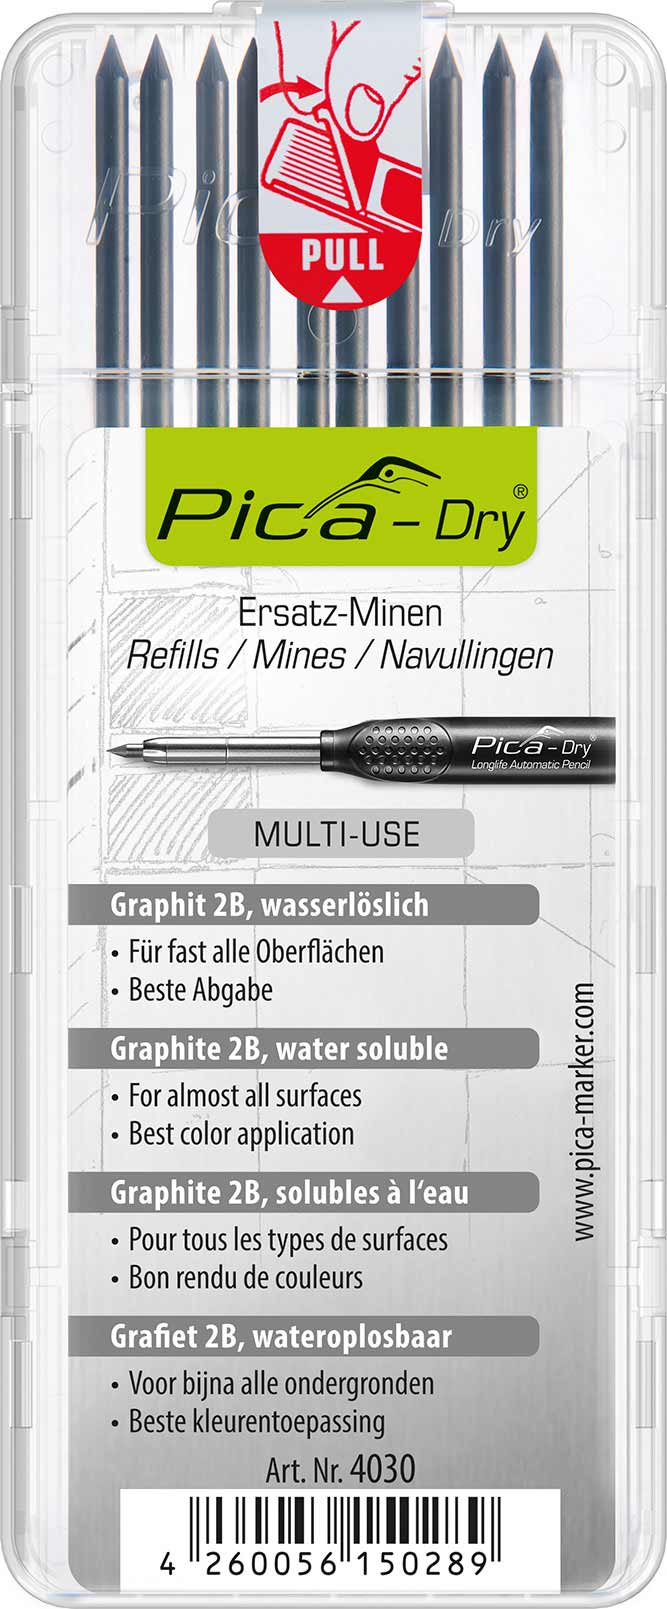 Pica® - Dry Ersatzminen Graphit